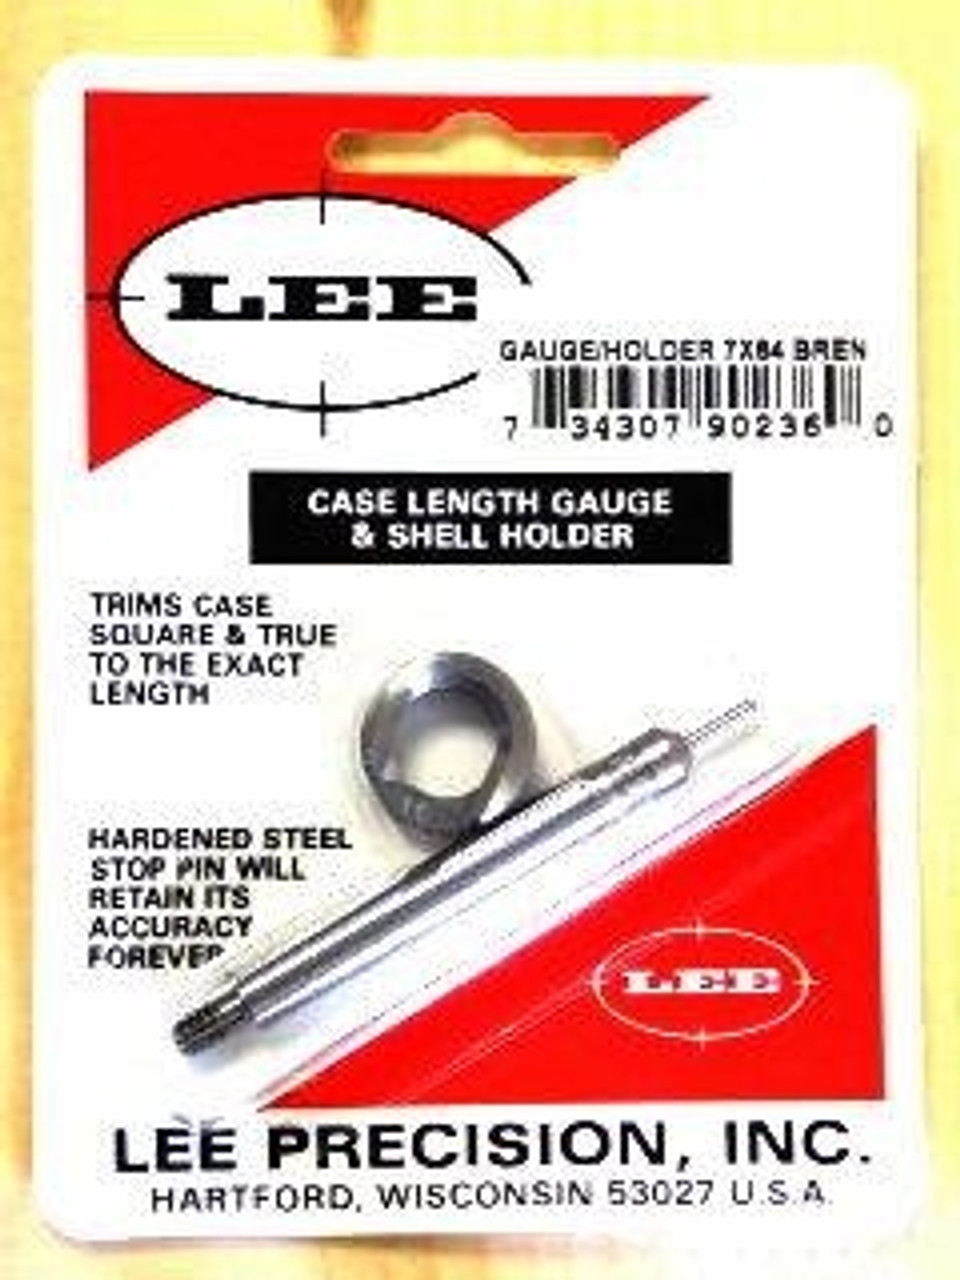 Lee Precision 7x64 Brenneke Case Gauge & Shell Holder